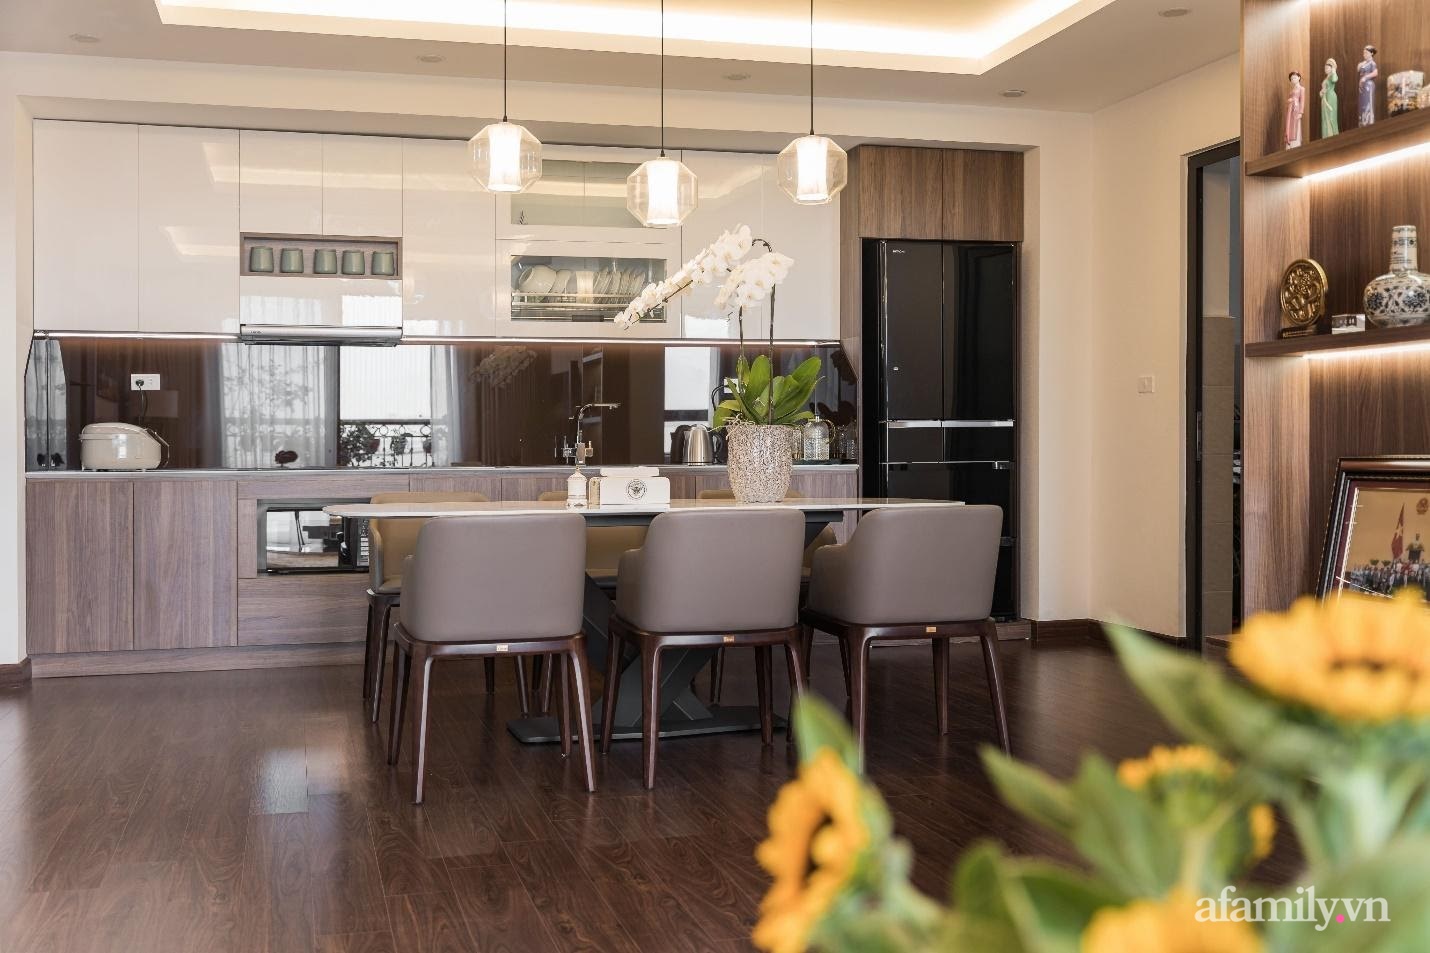 Sự hiện đại và tiện nghi đến từng chi tiết bên trong căn hộ rộng 120m² tại Hà Nội - Ảnh 8.